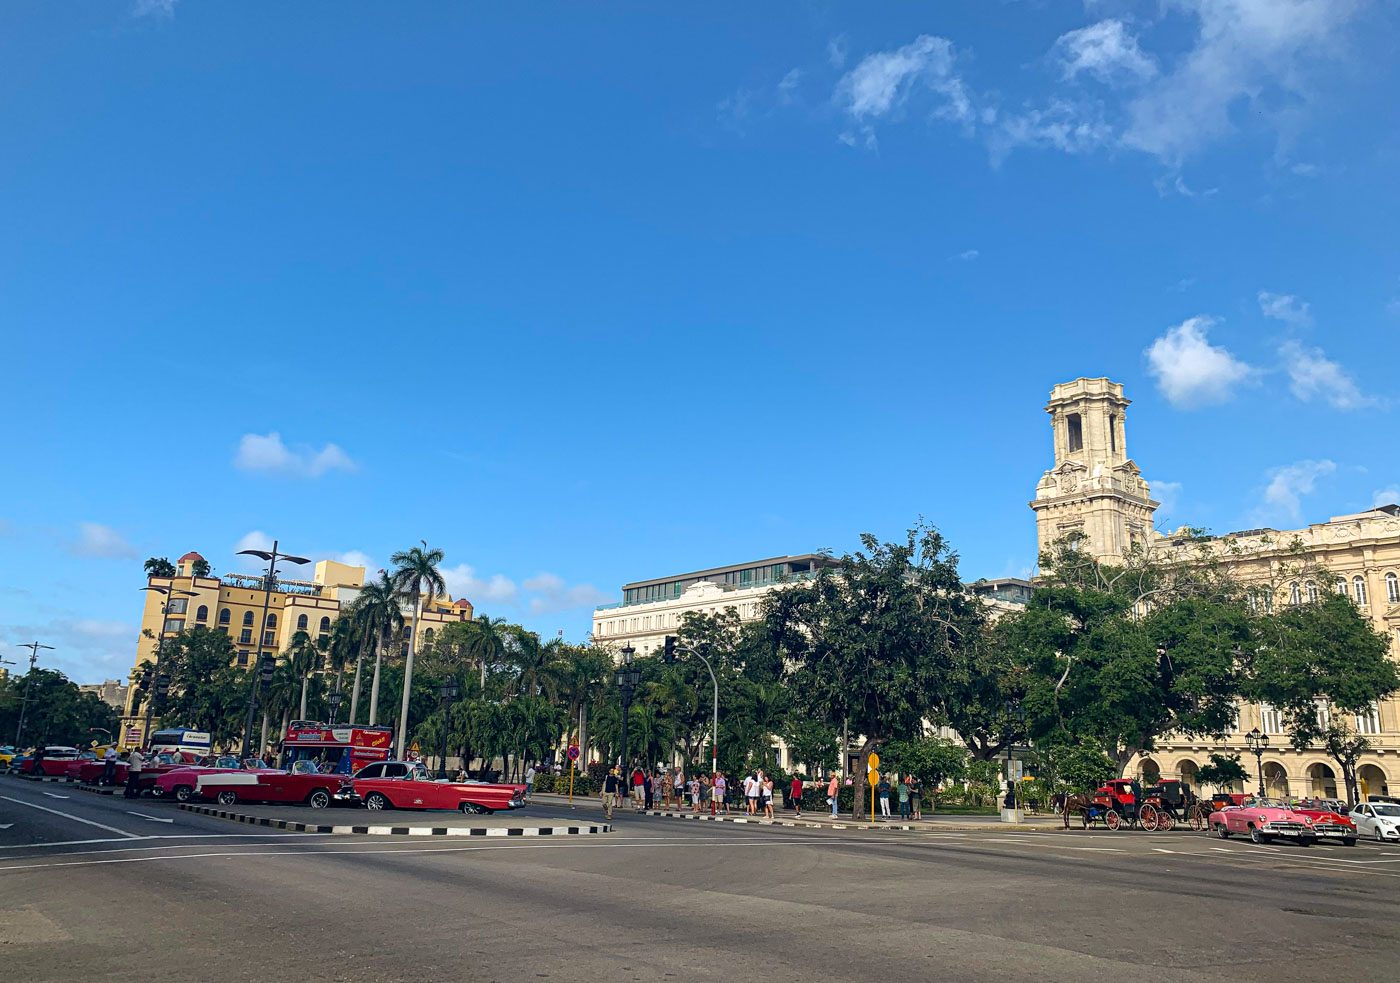 Parque Central in Havana, Cuba